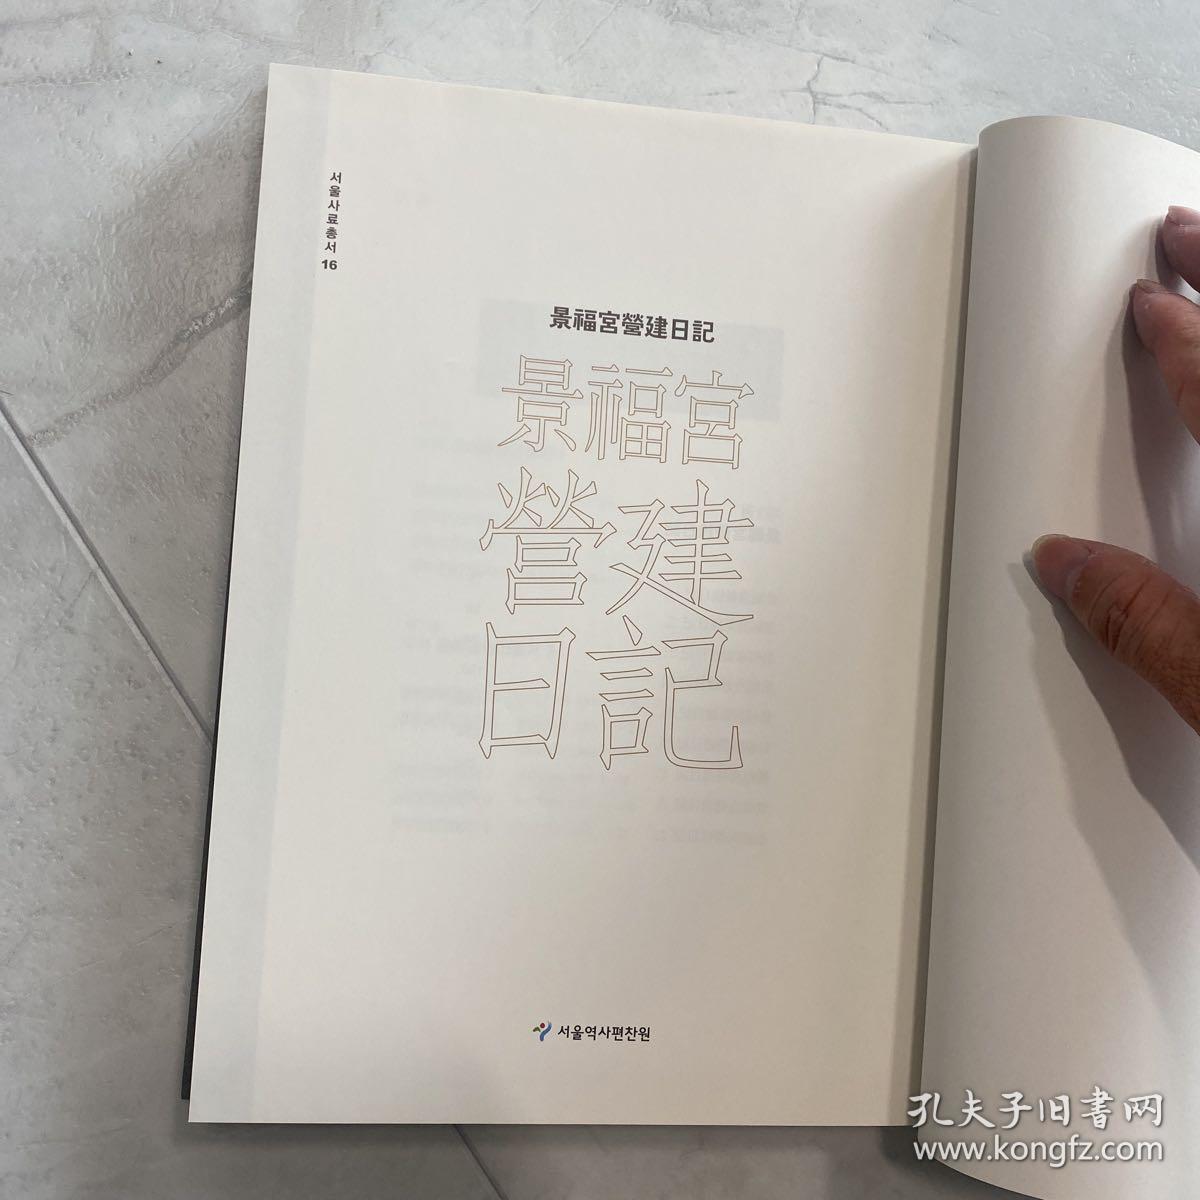 景福宫营建日记 古文汉字 全汉字 版本好 精装 全网唯一